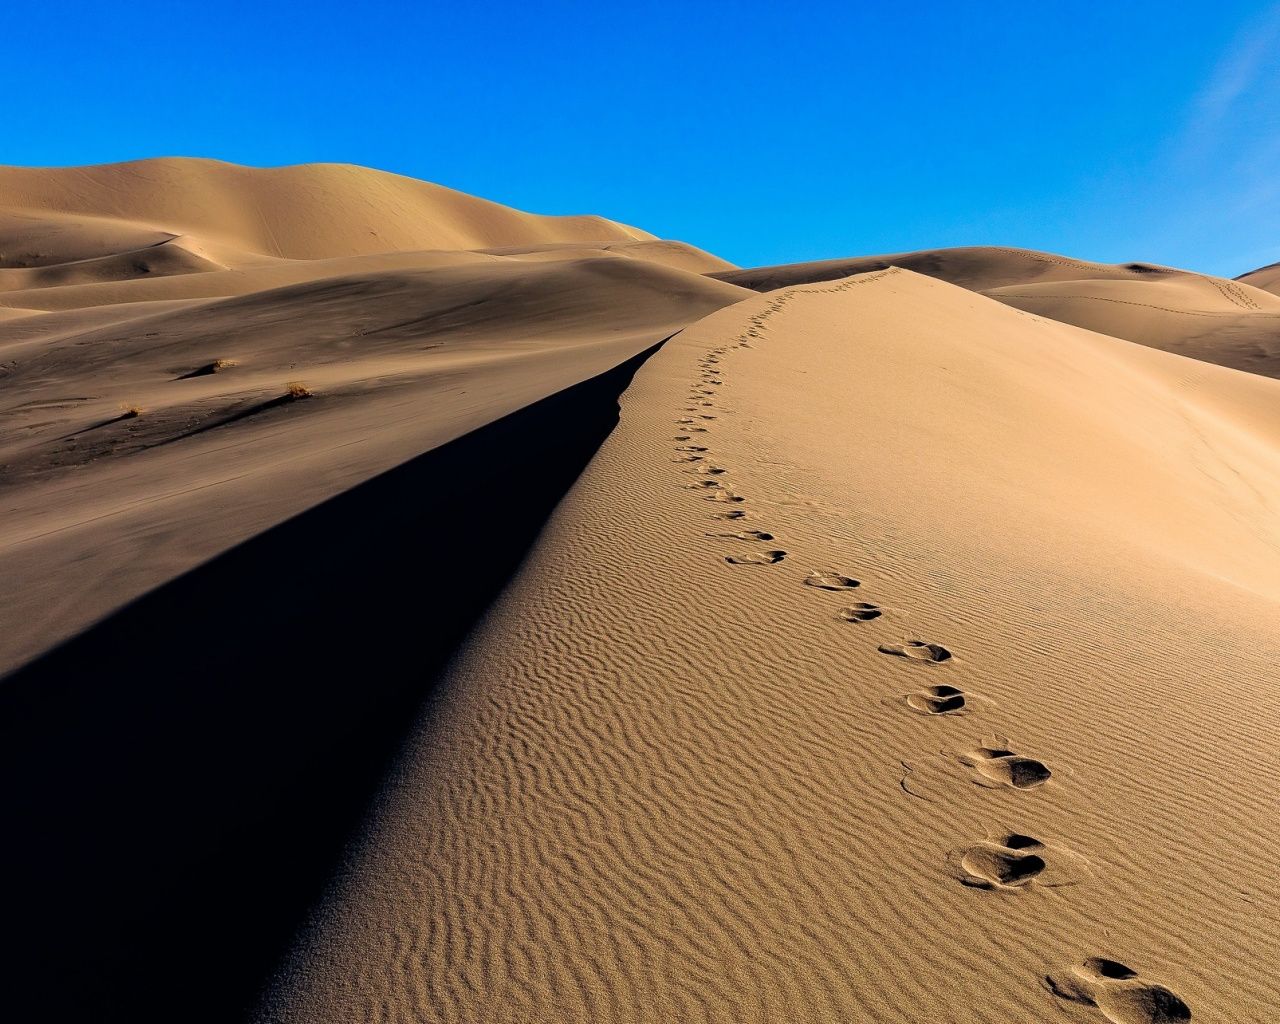 Download 1280x1024 wallpaper desert, camel's footprint, sand